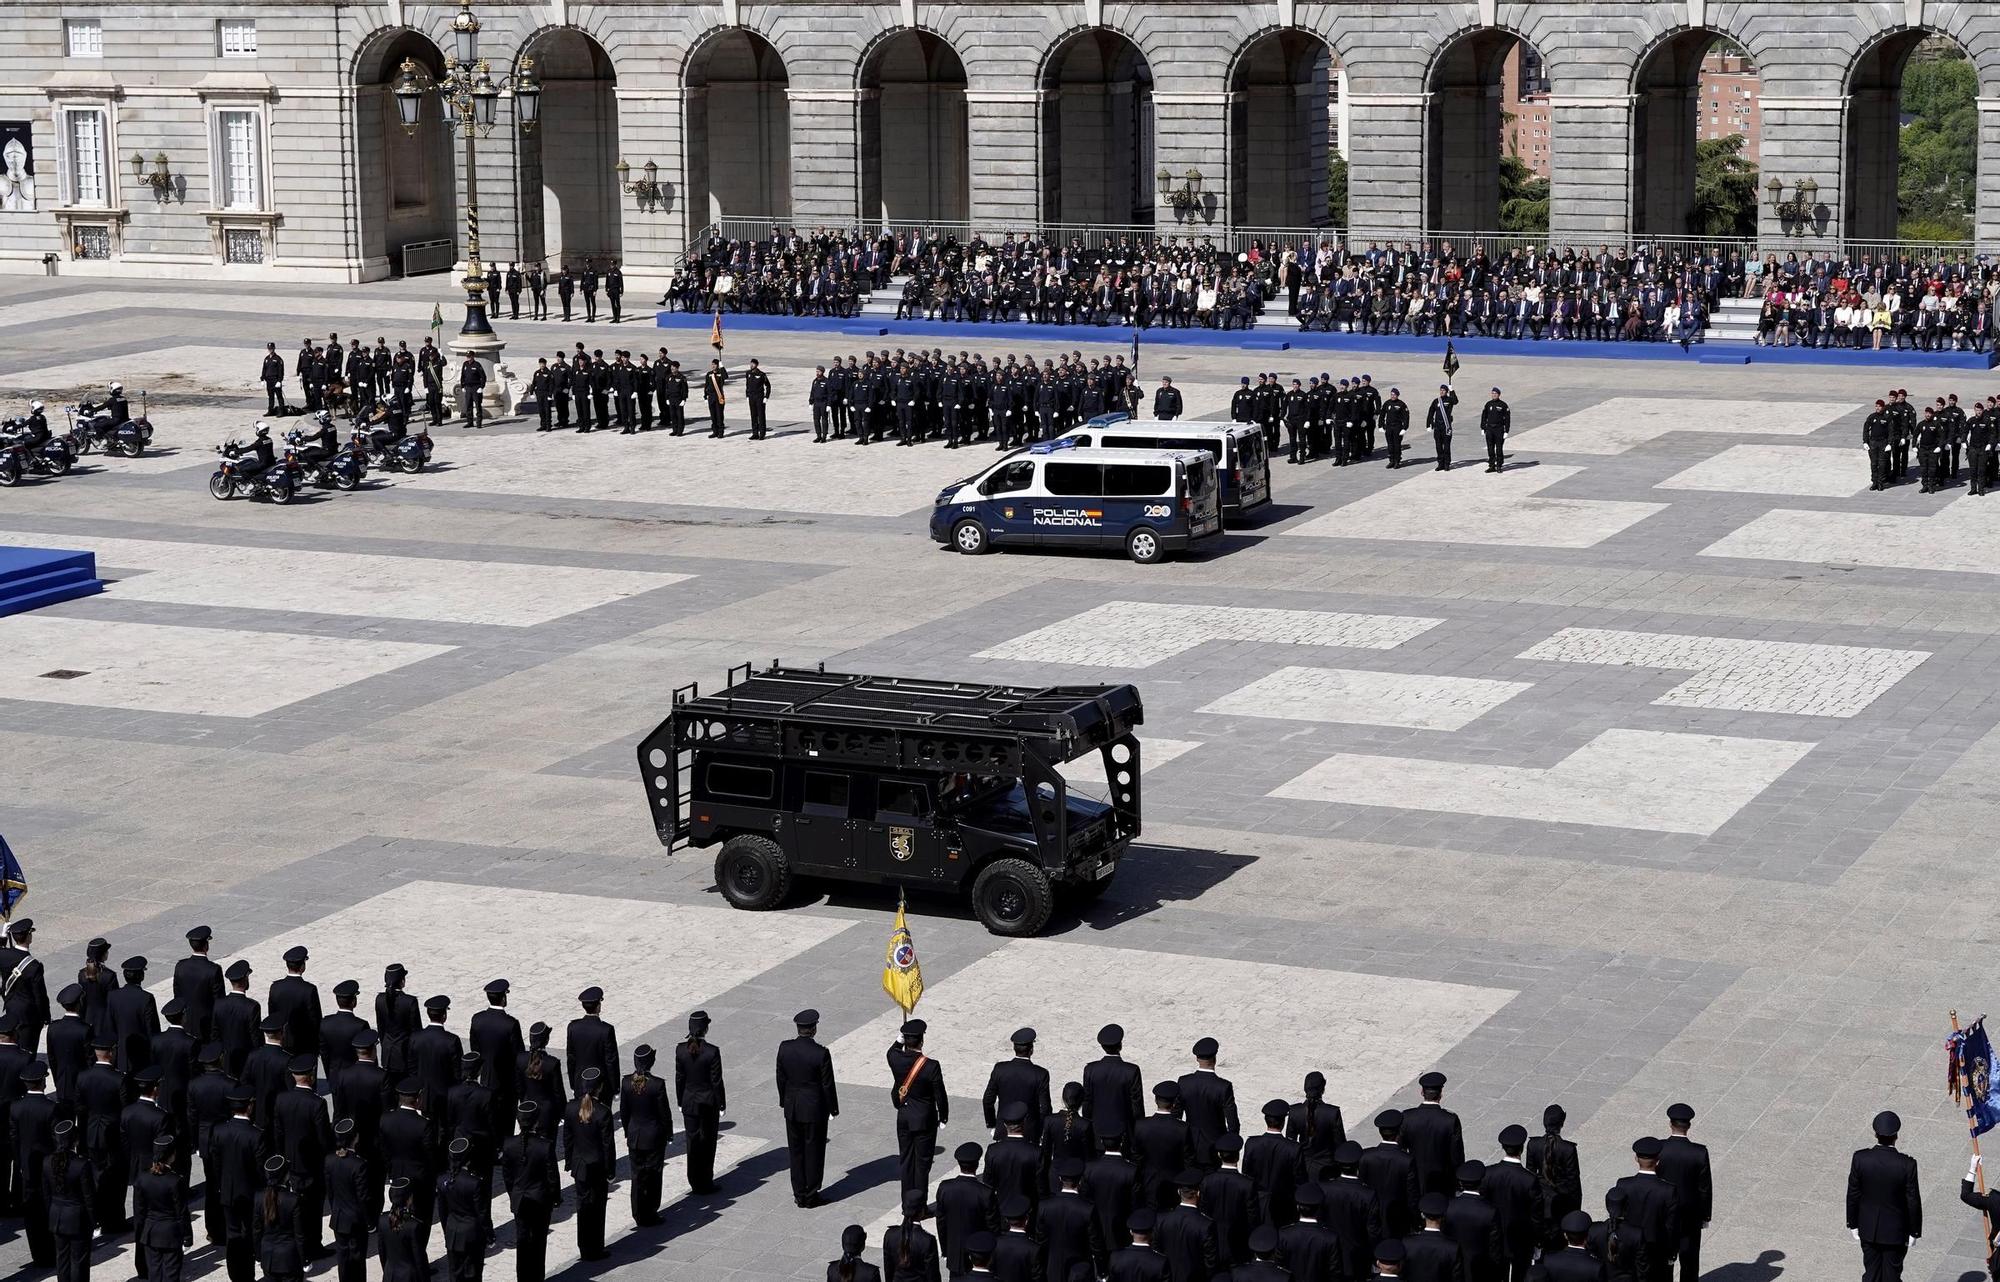 El Cuerpo Nacional de Policía celebra en el Palacio Real de Madrid el 200 aniversario de su creación